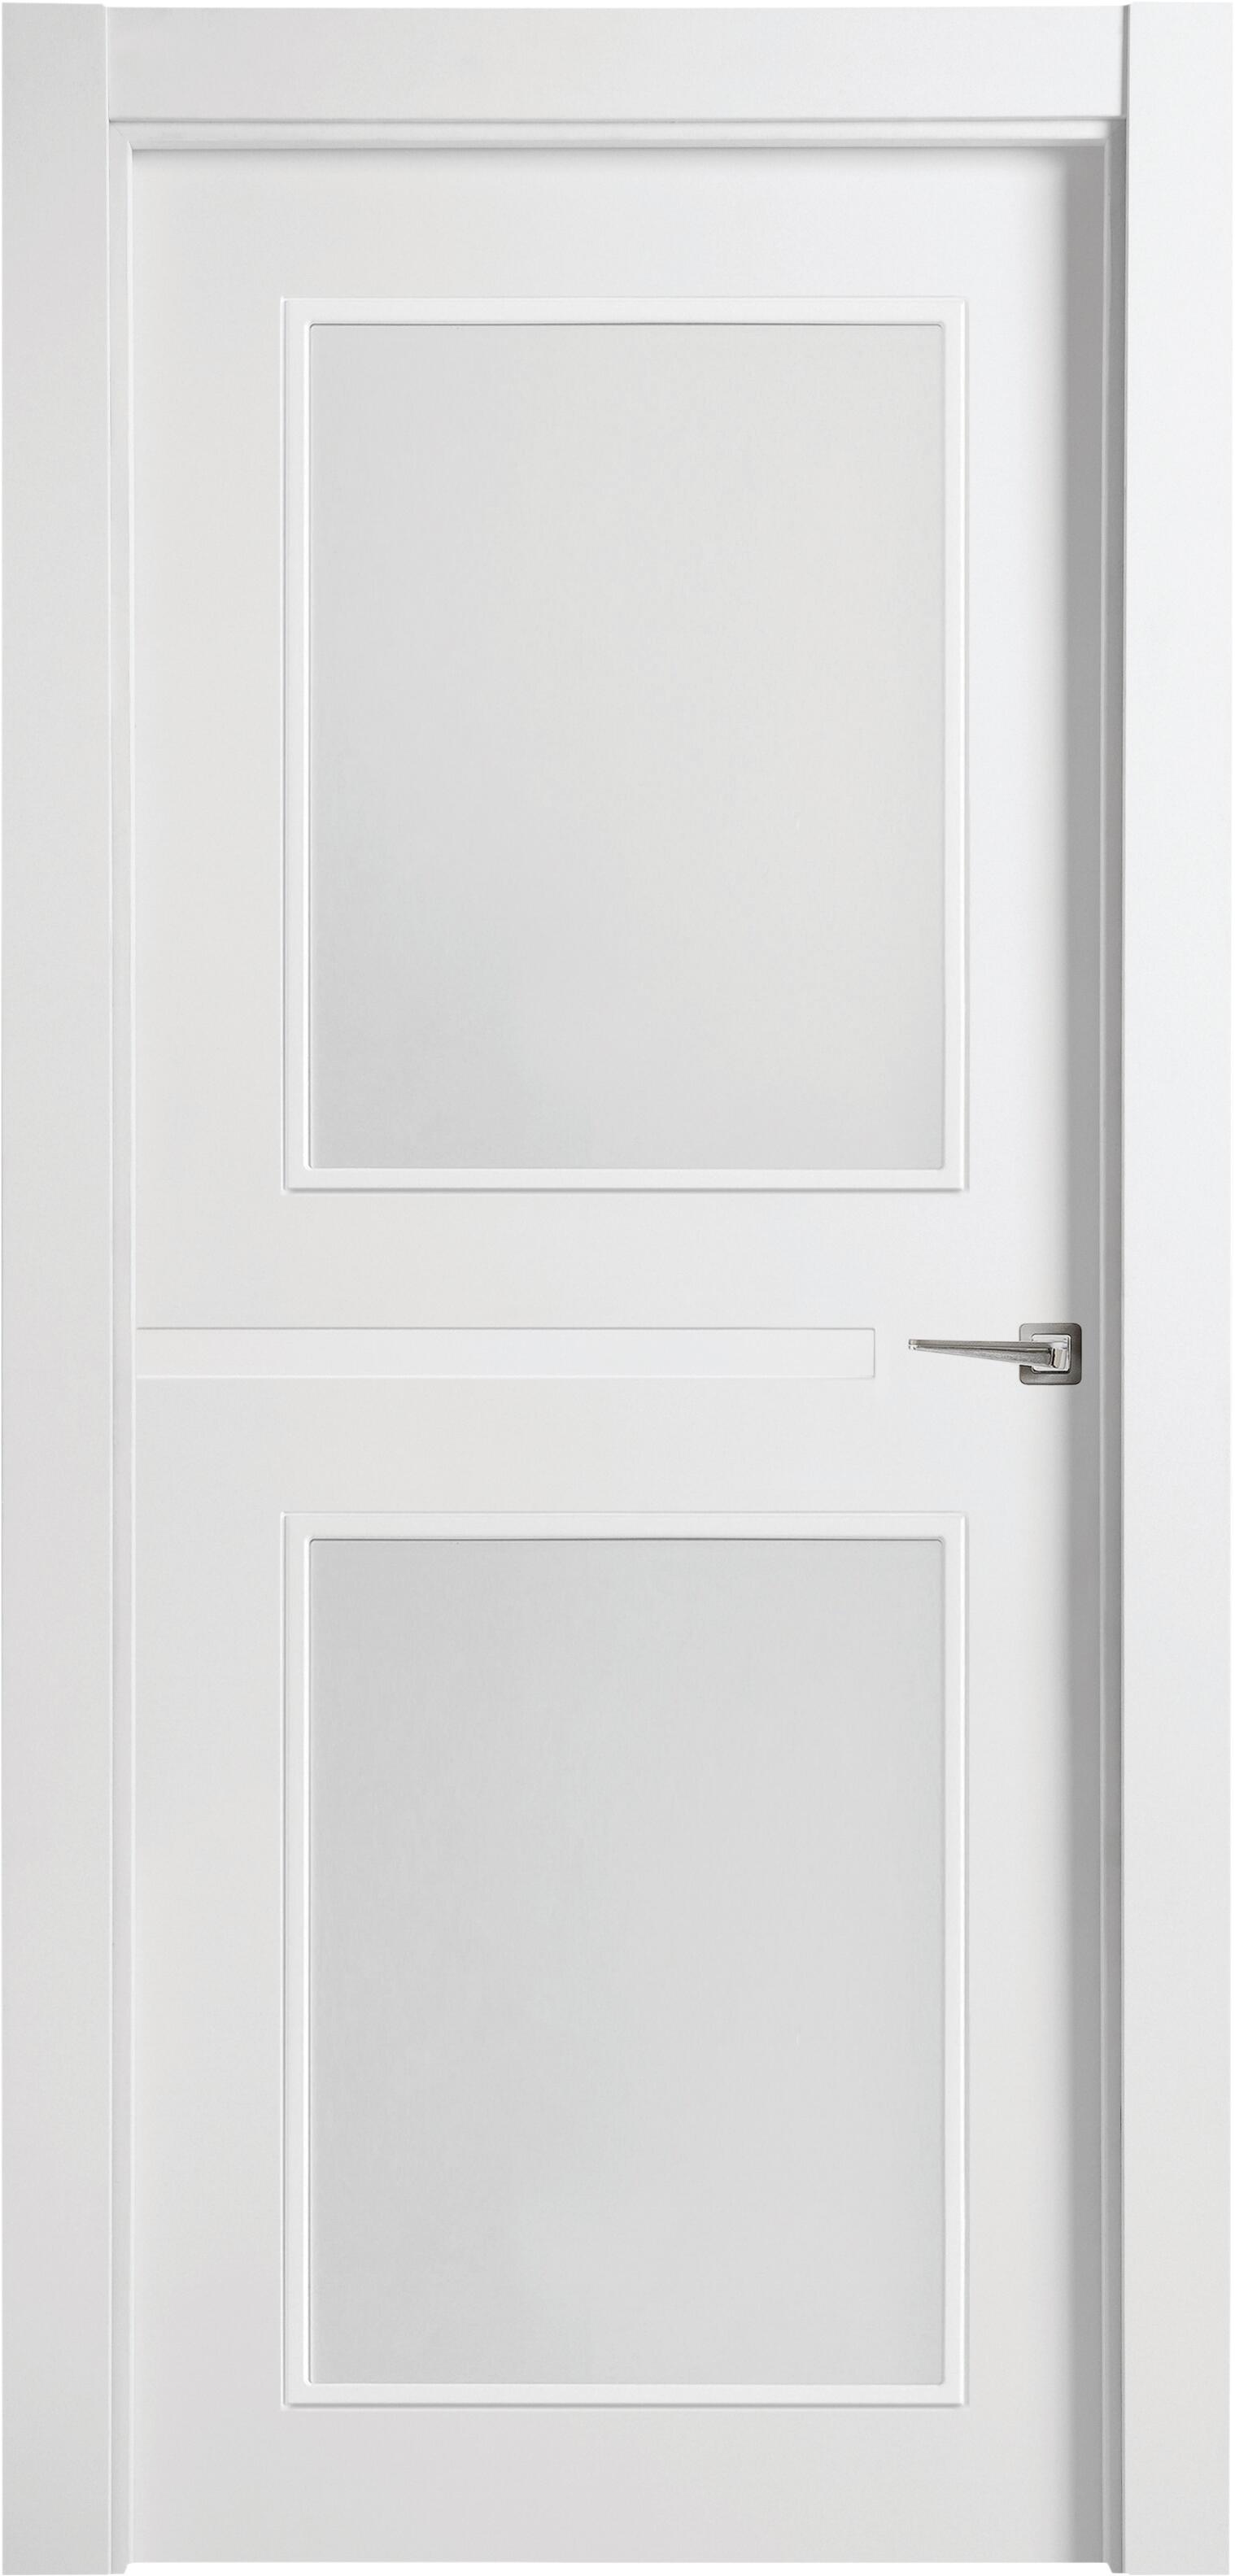 Puerta denver blanco apertura izquierda con cristal 11x92,5cm